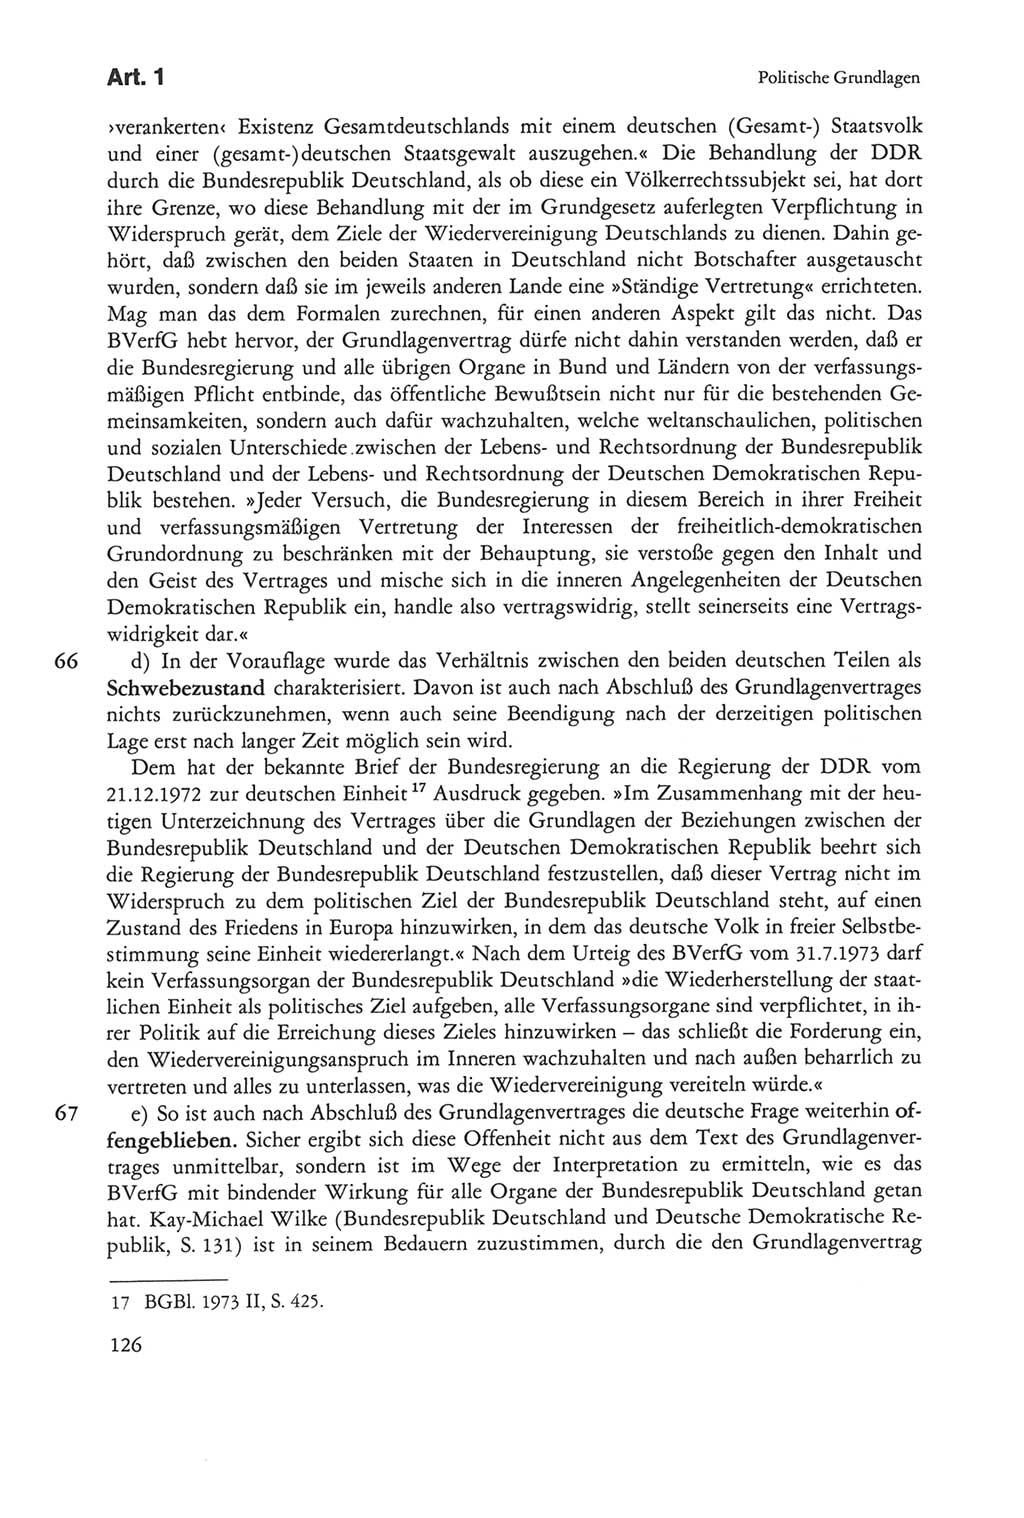 Die sozialistische Verfassung der Deutschen Demokratischen Republik (DDR), Kommentar mit einem Nachtrag 1997, Seite 126 (Soz. Verf. DDR Komm. Nachtr. 1997, S. 126)